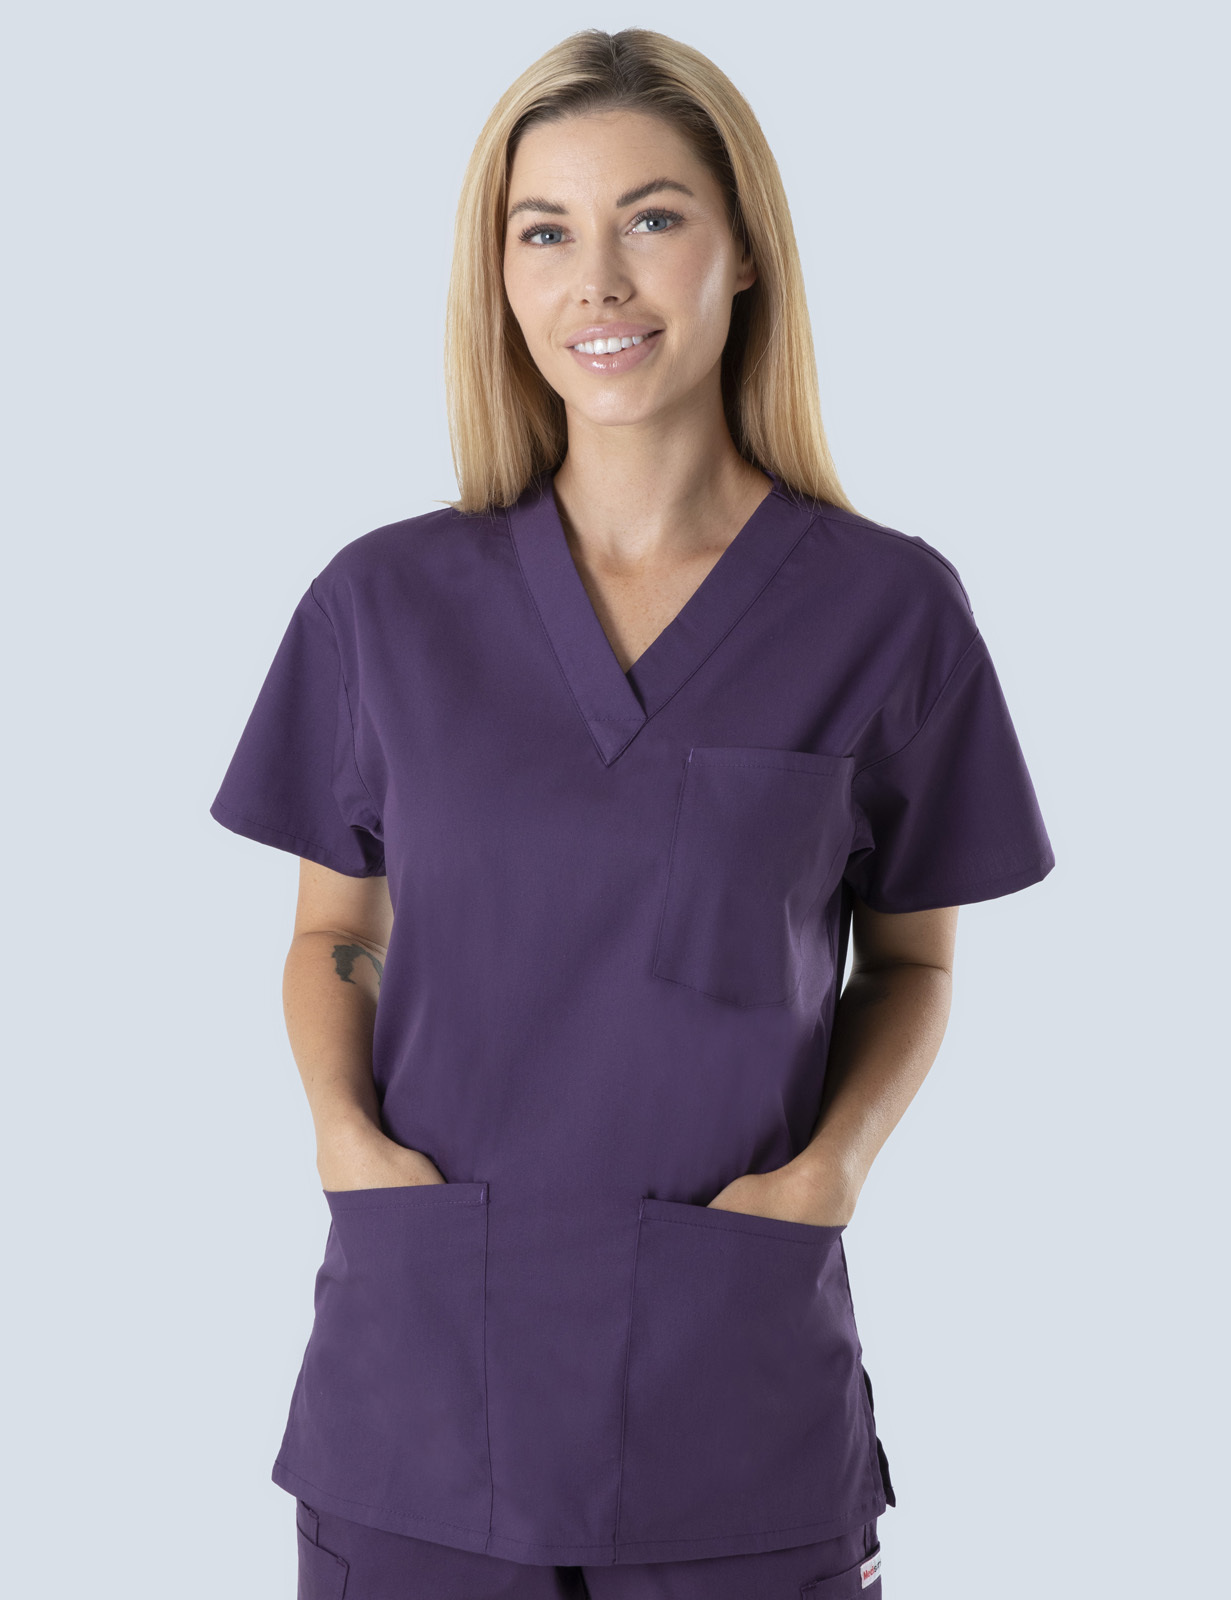 Queensland Children's Hospital Emergency Department Doctor Uniform Top  Bundle (4 Pocket Top in Aubergine  incl Logos)